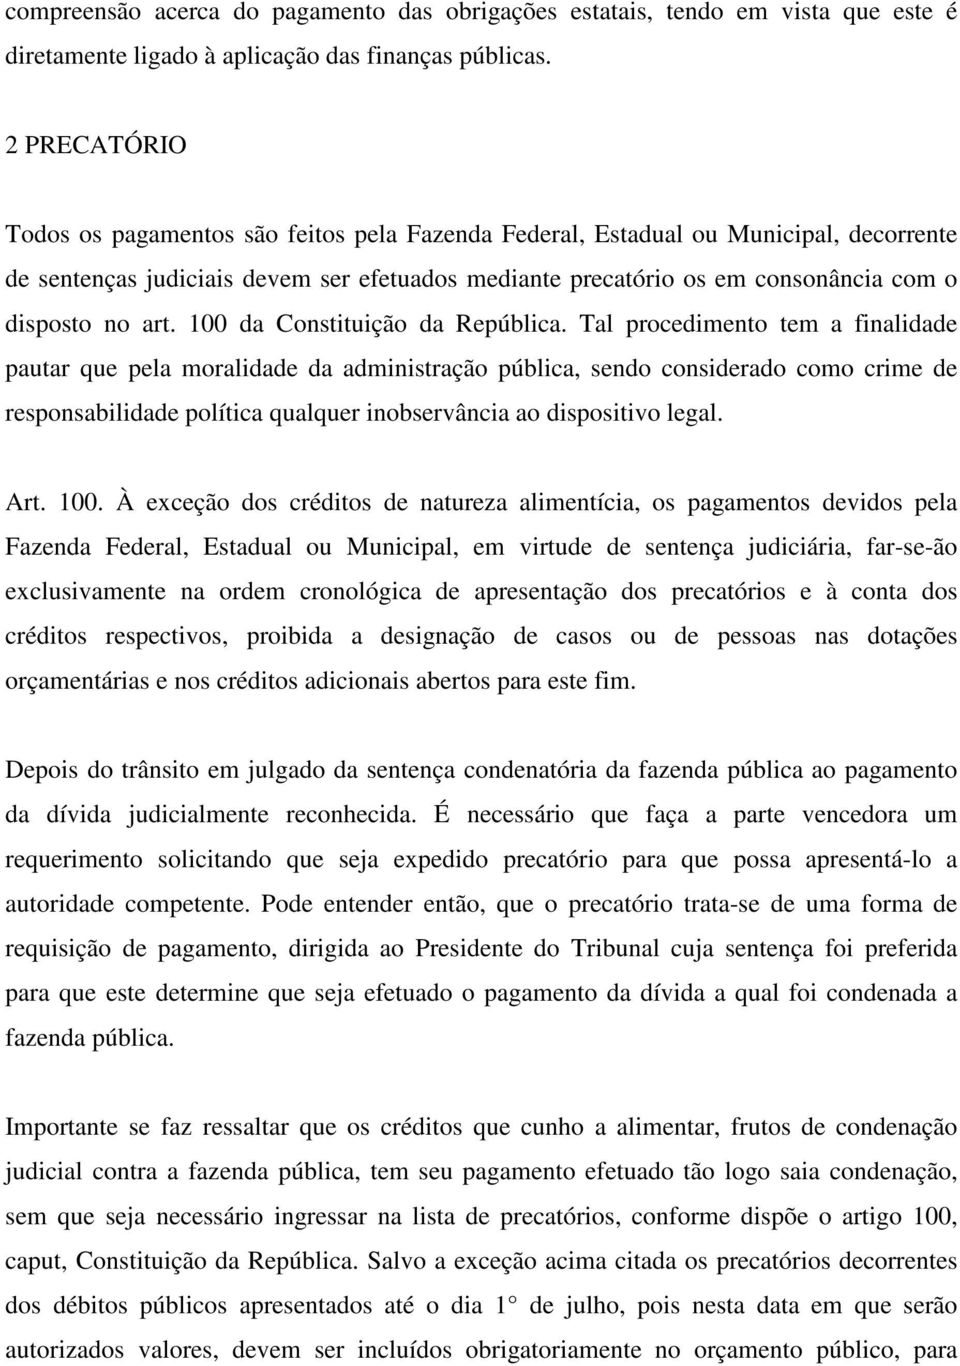 art. 100 da Constituição da República.